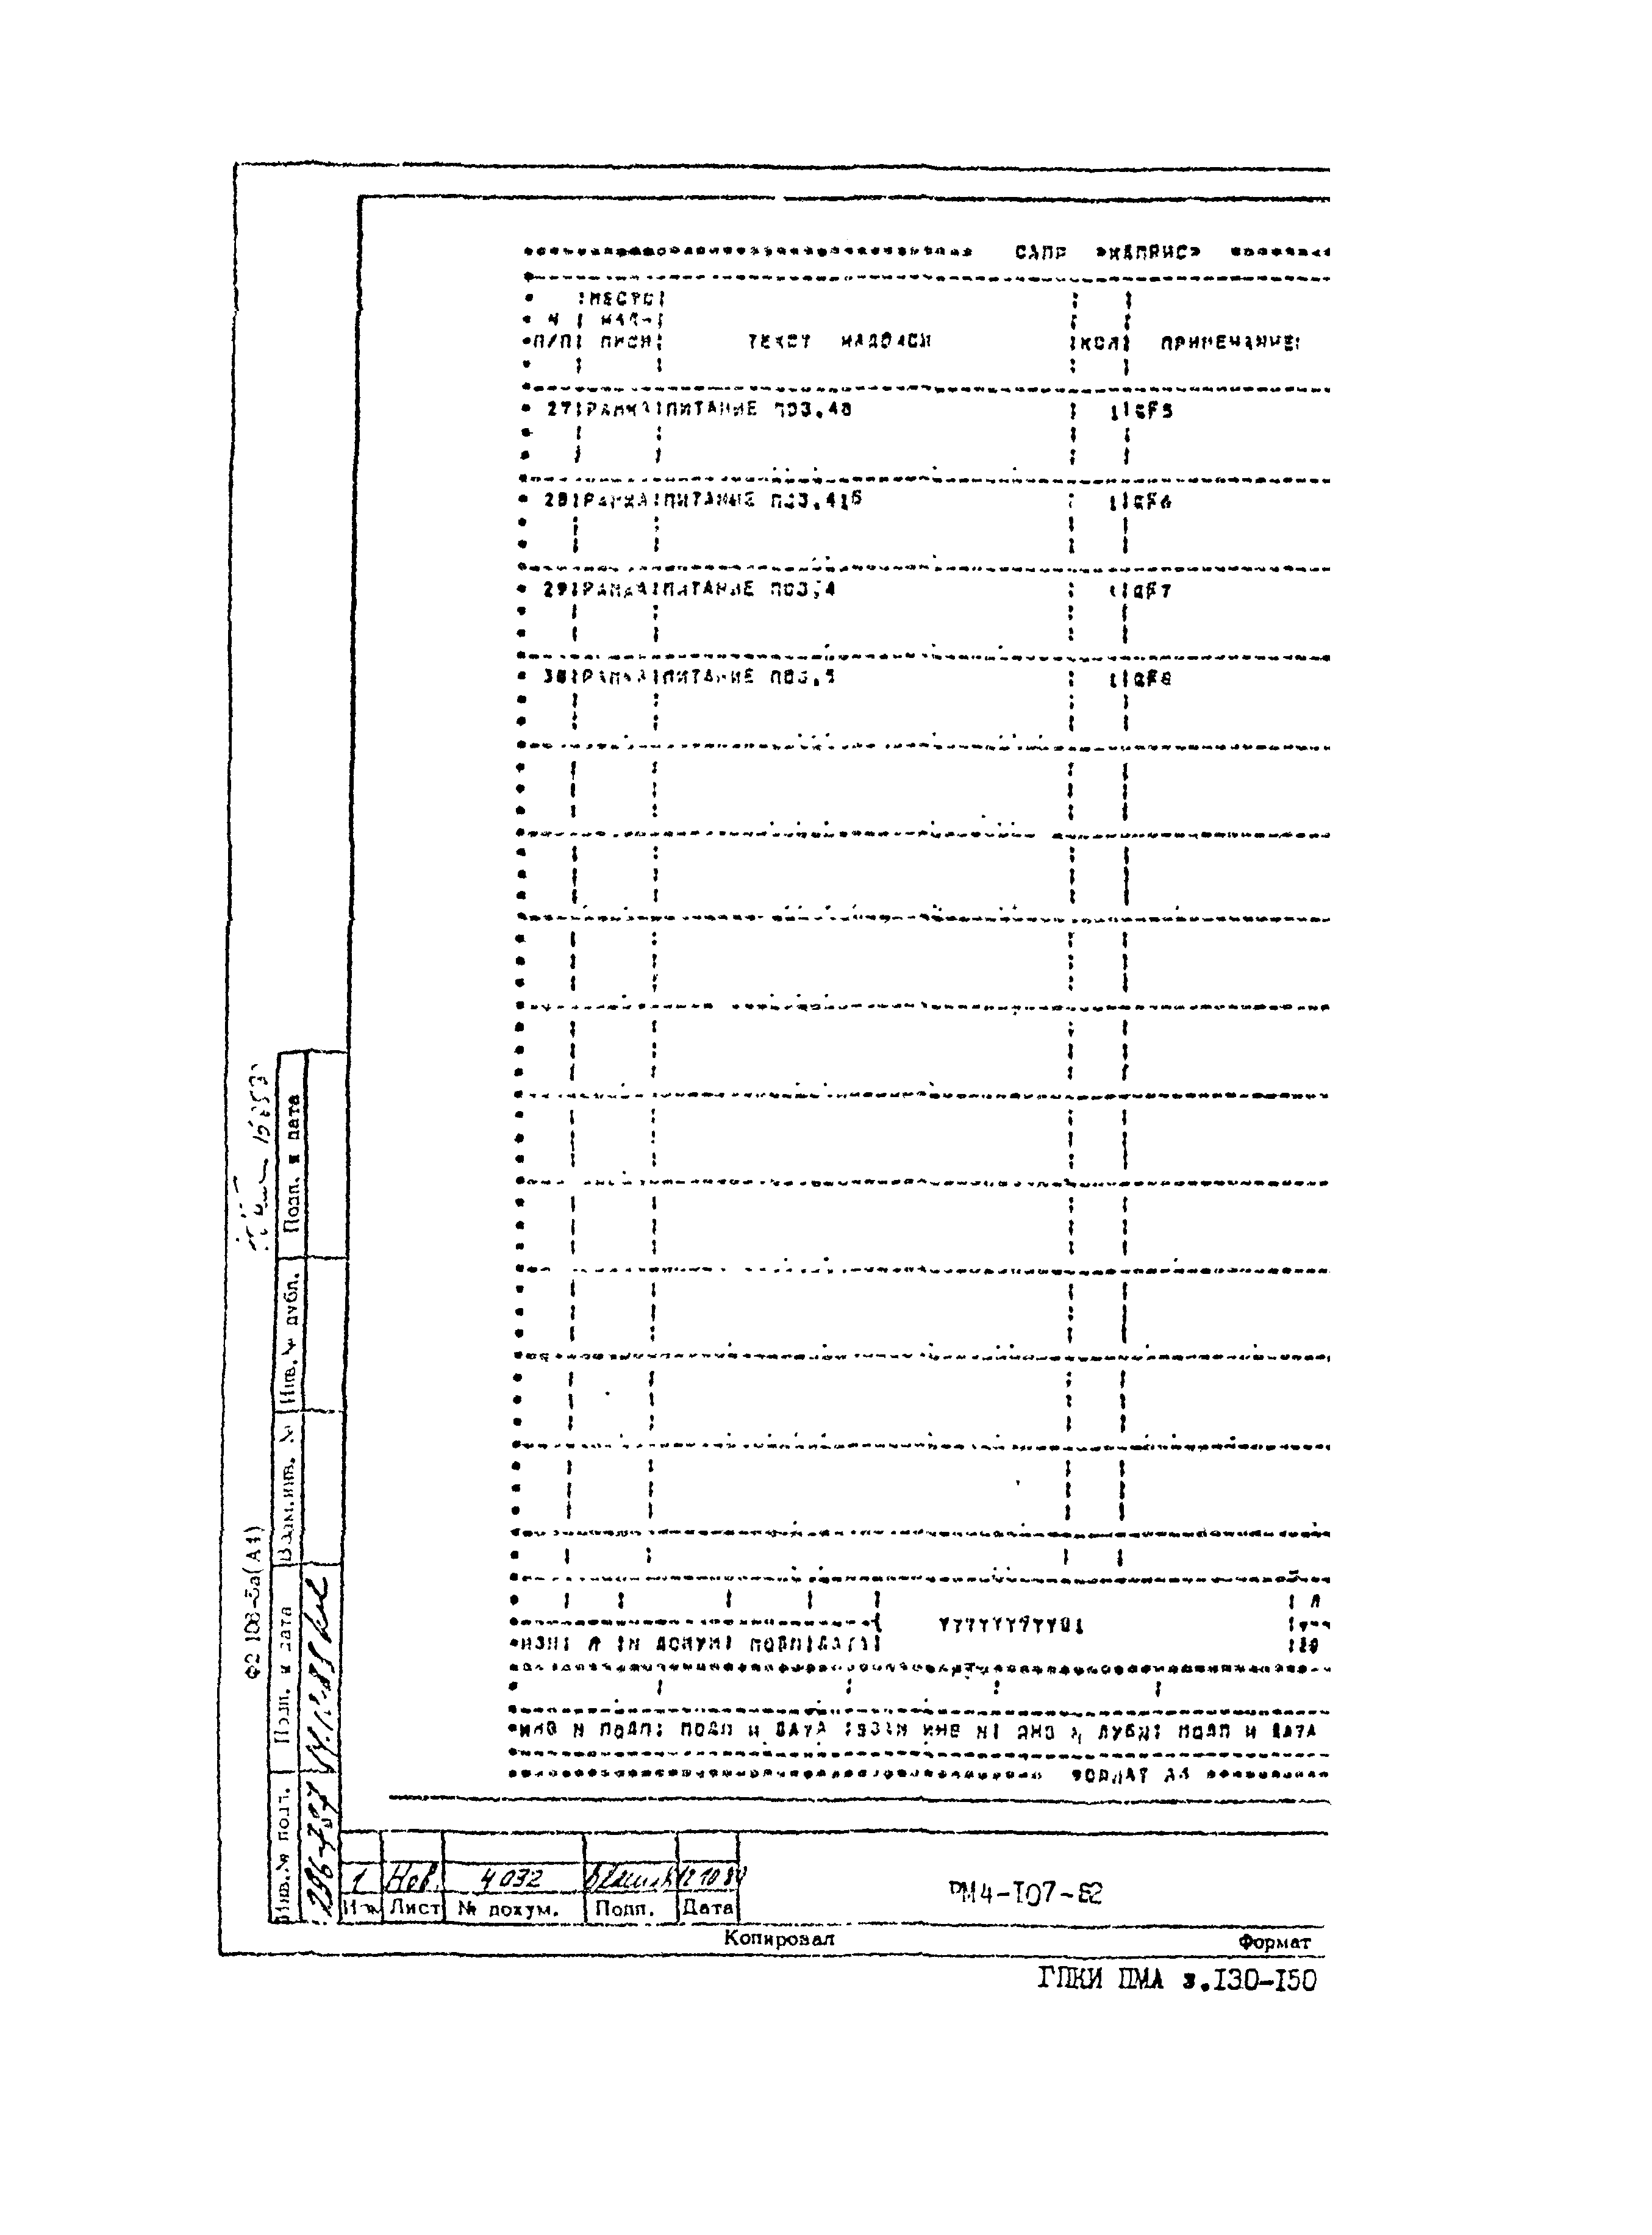 РМ 4-107-82